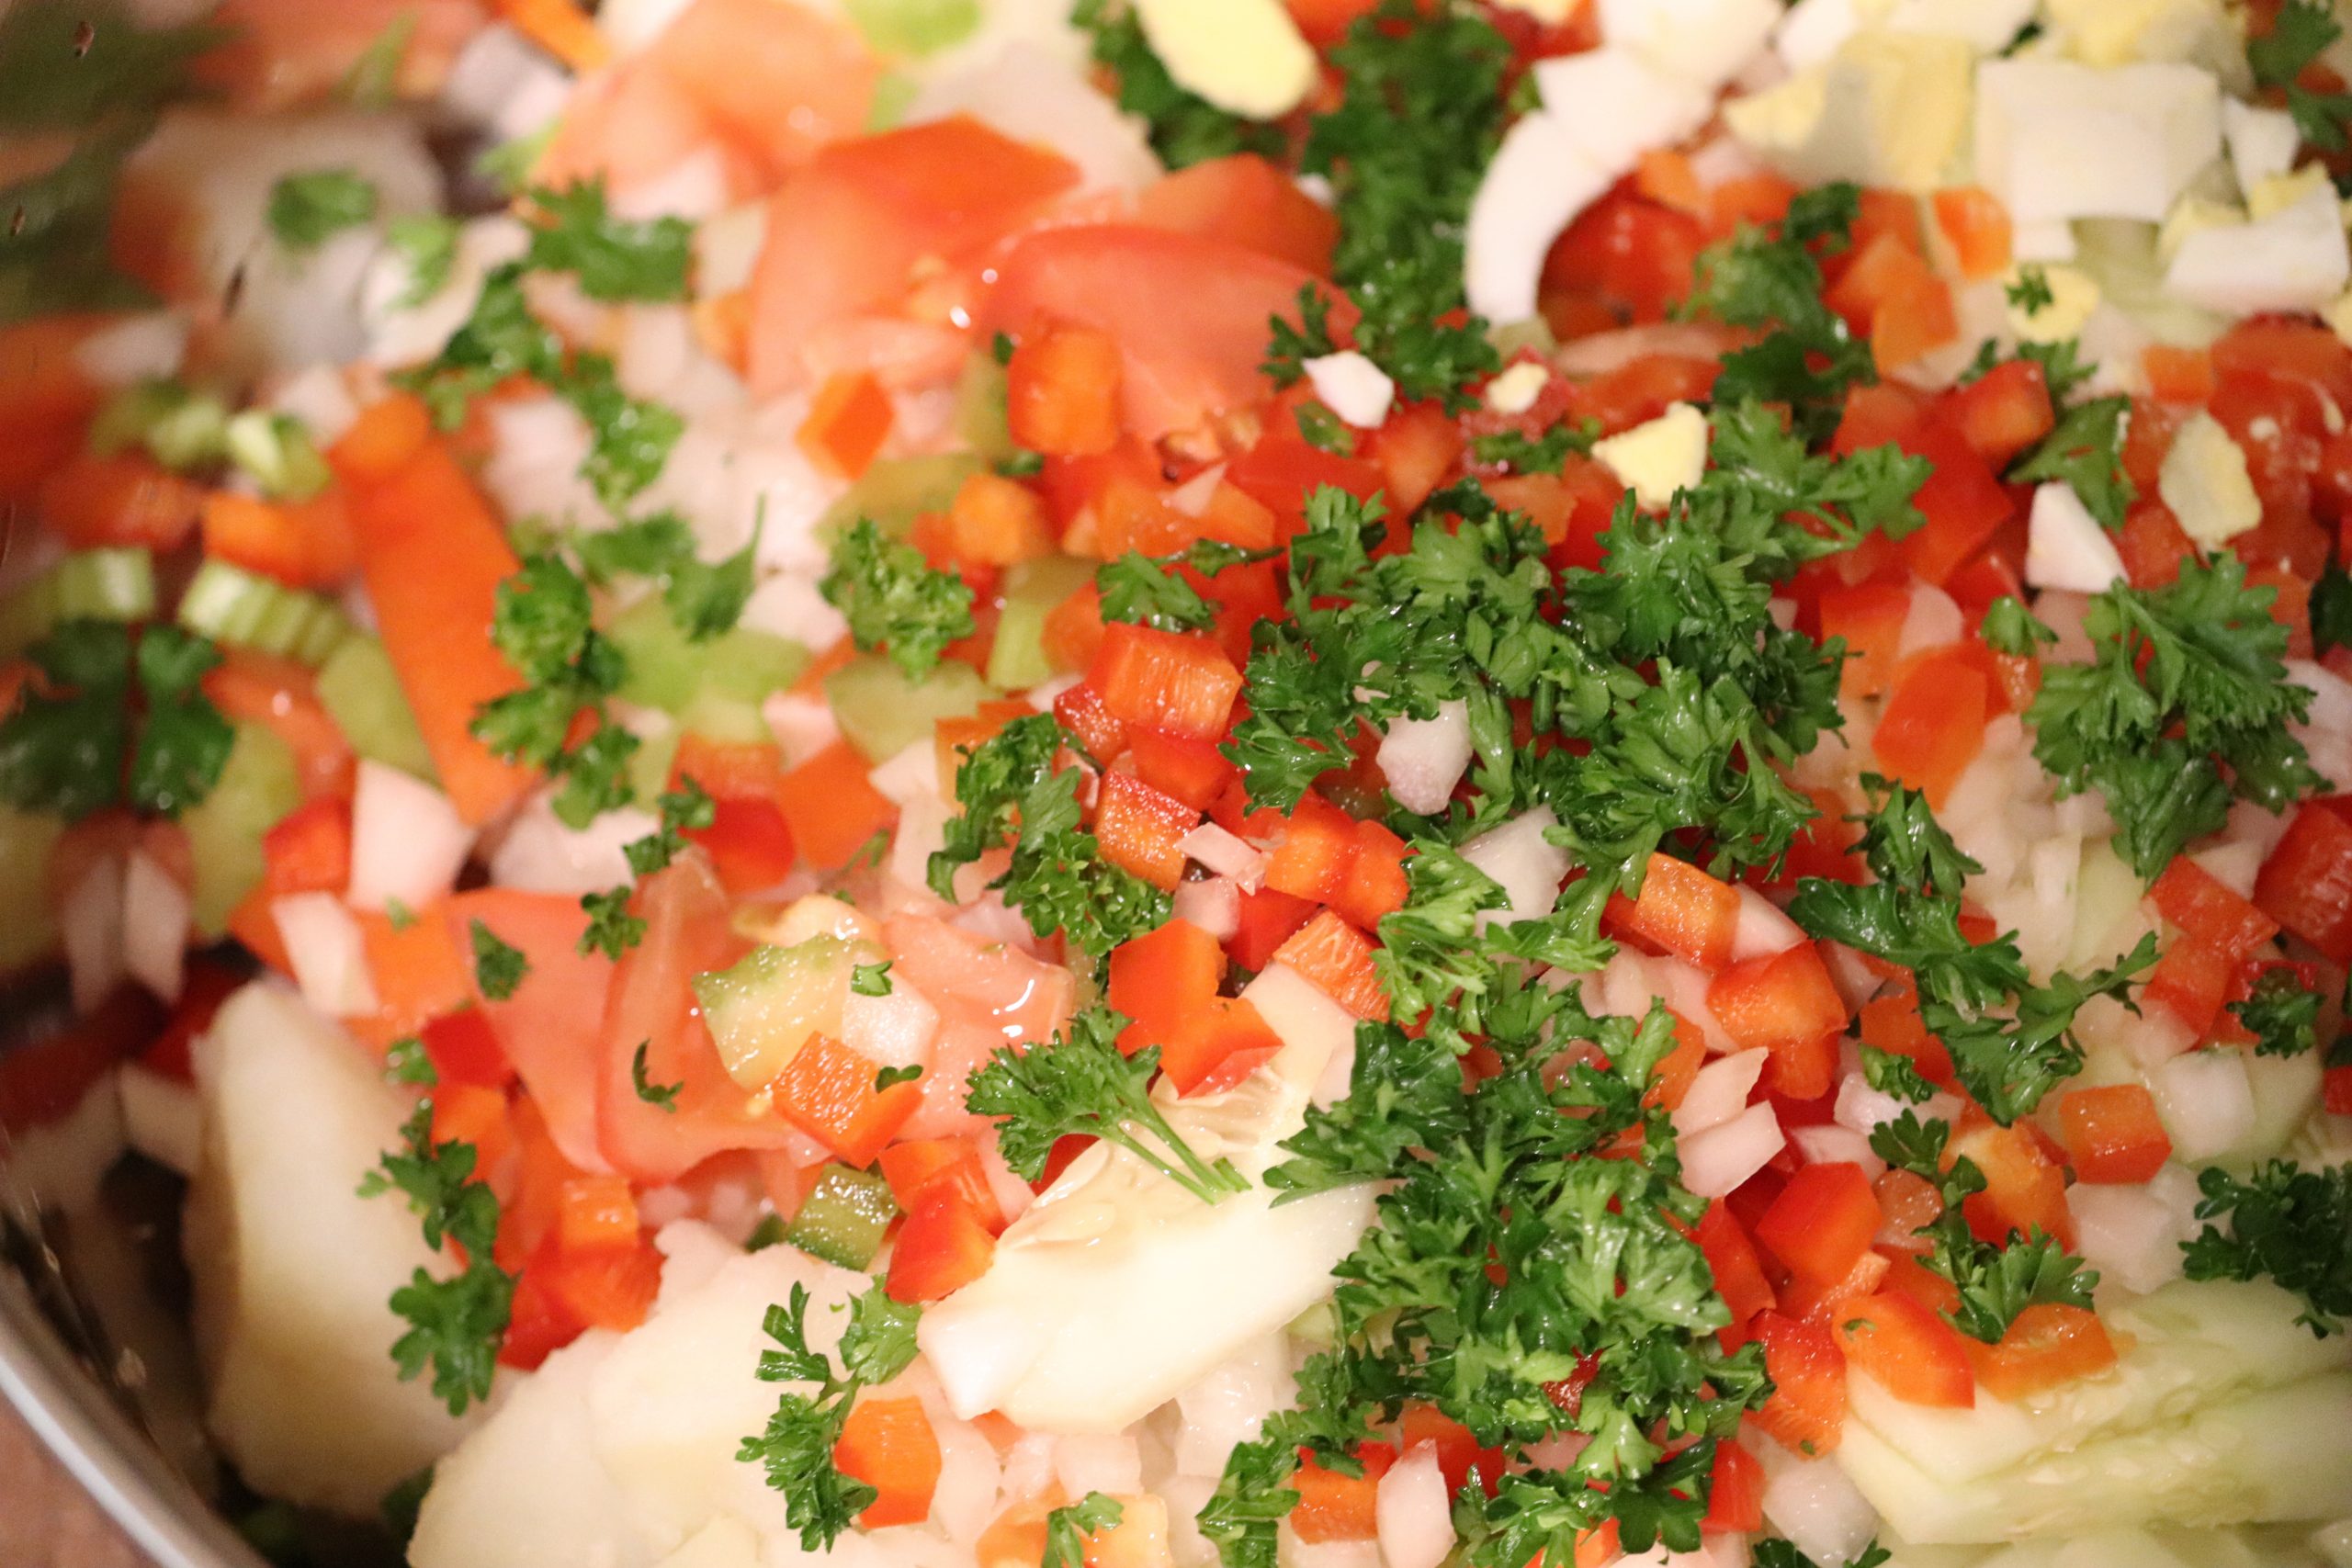 Mealtime Vegetable Loaded Potato Salad